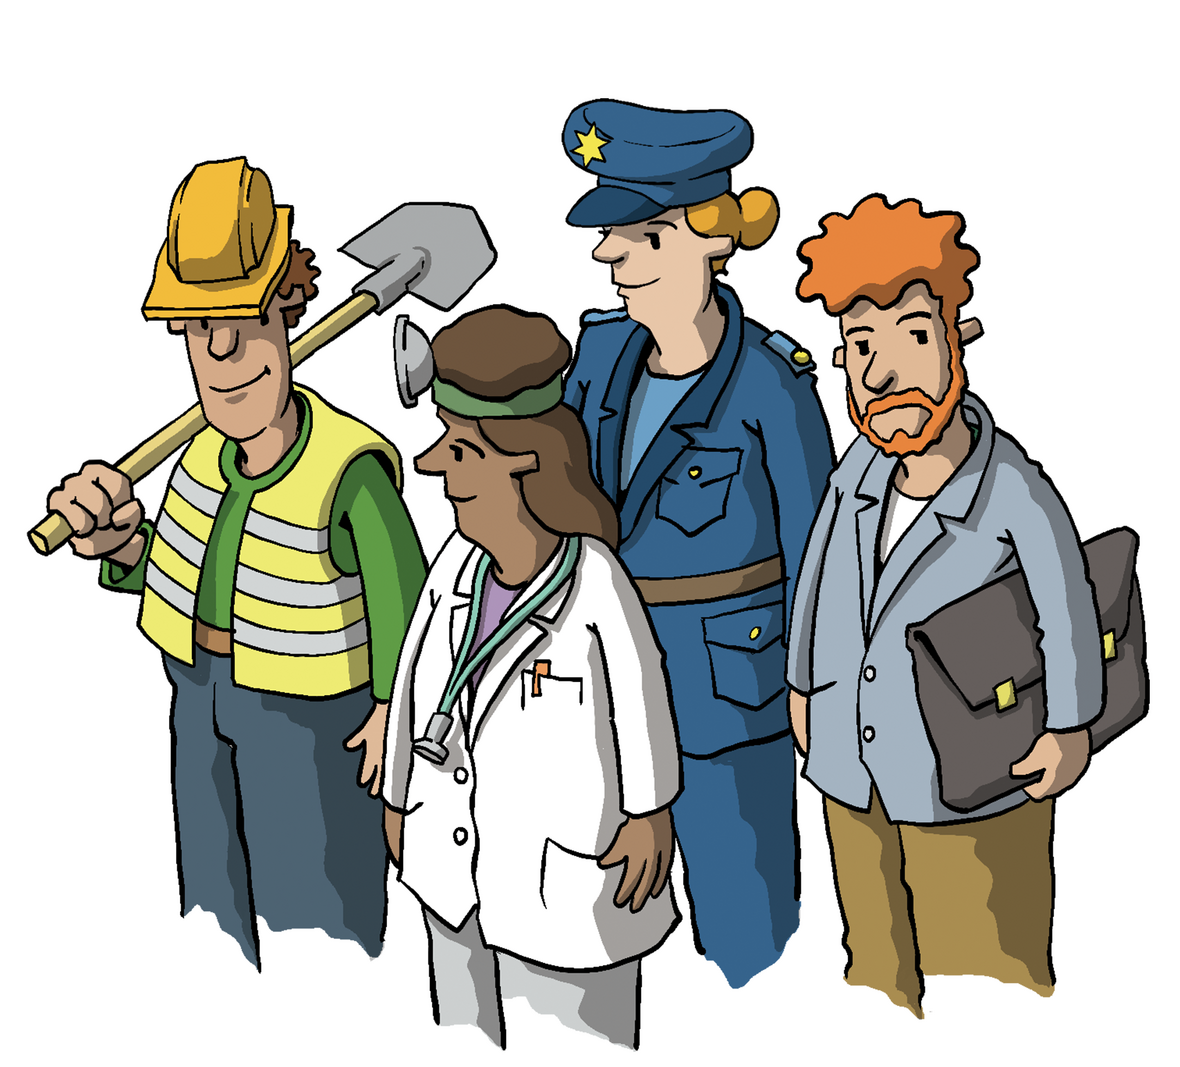 Man sieht Menschen mit unterschiedlichen Berufen: einen Bauarbeiter, eine Ärztin, eine Polizistin, einen Lehrer. 